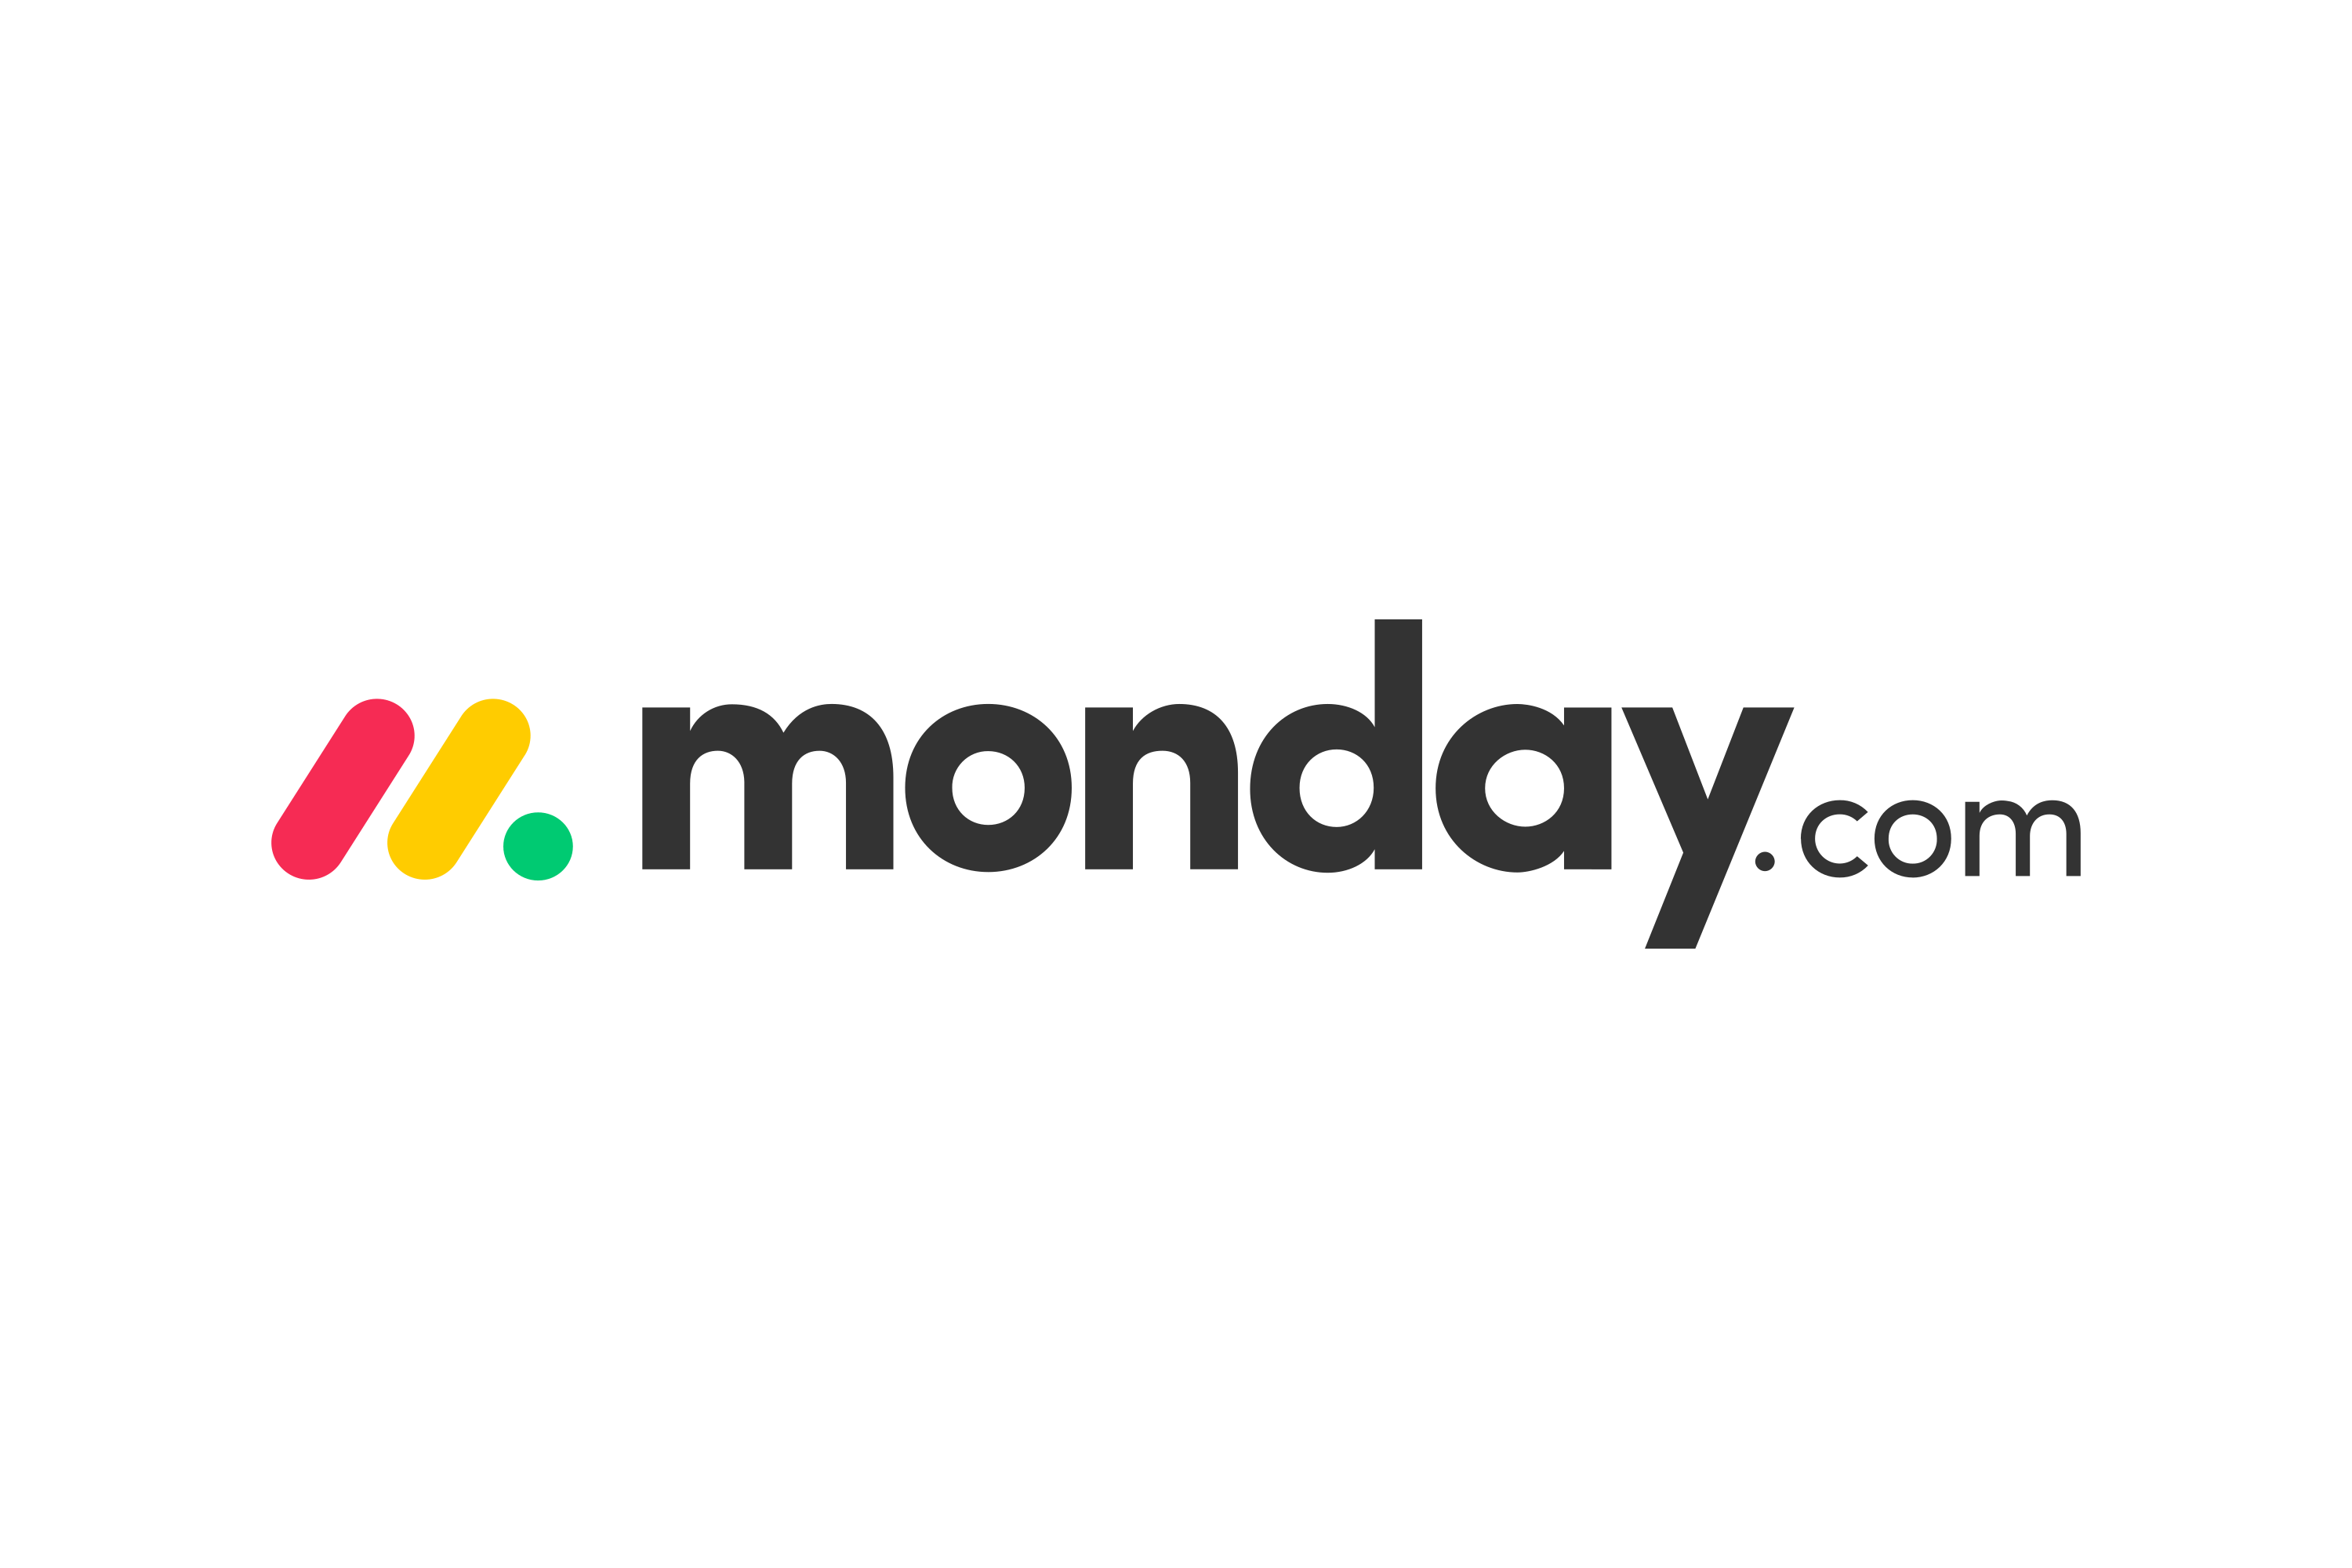 Monday.com Logo.wine